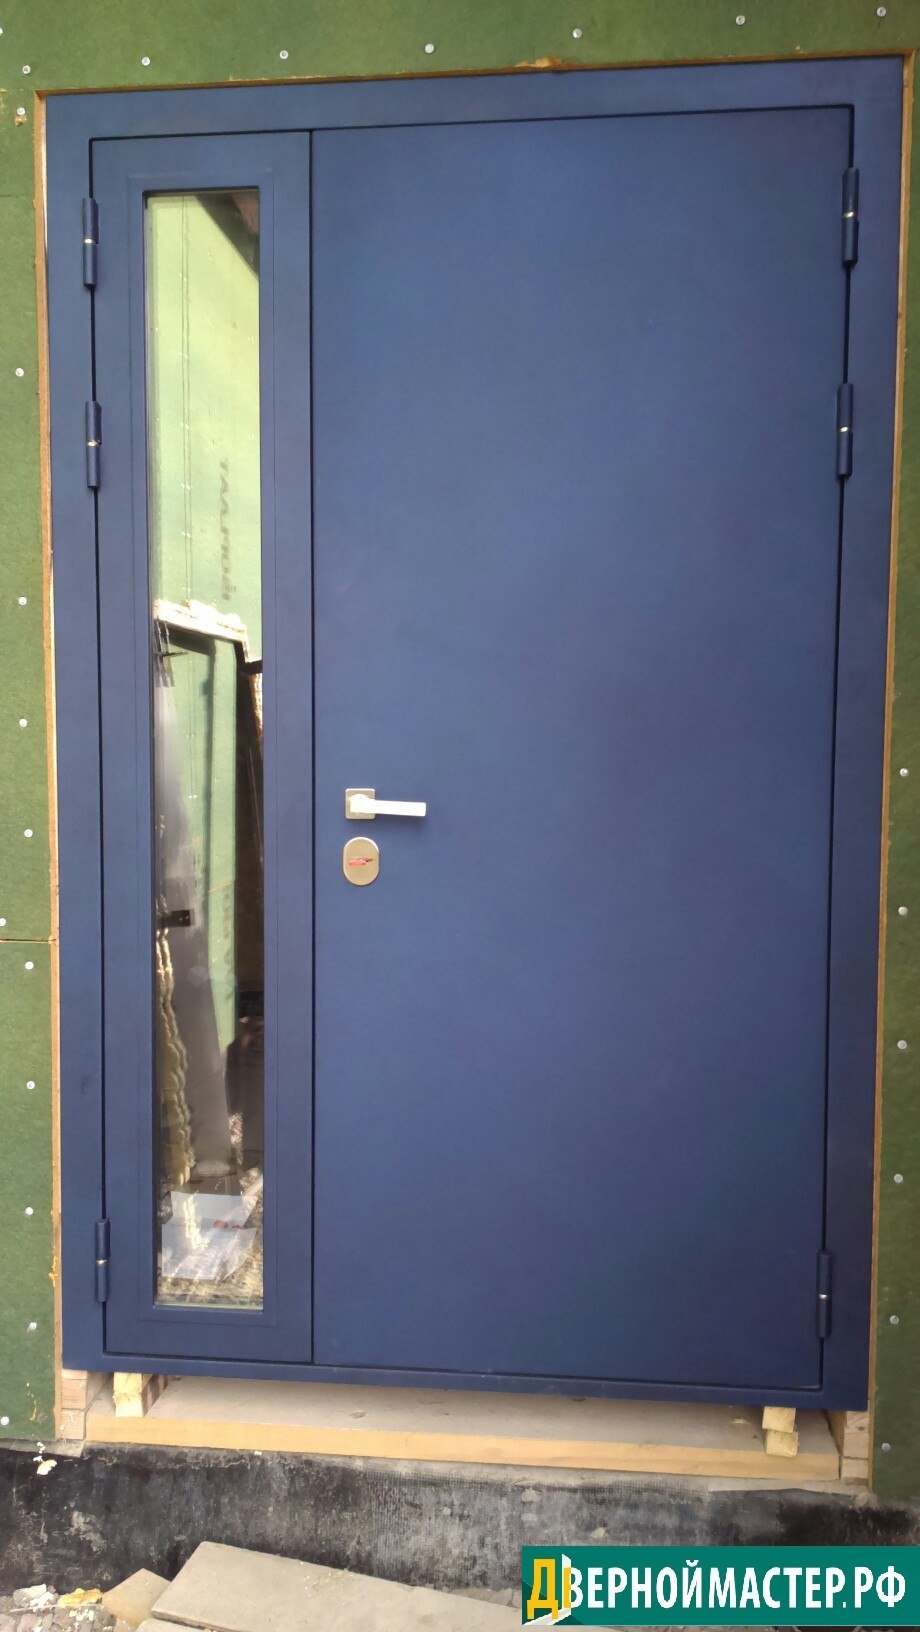 Входная металлическая дверь нестандартного размера со стеклом в боковой дополнительной створке.